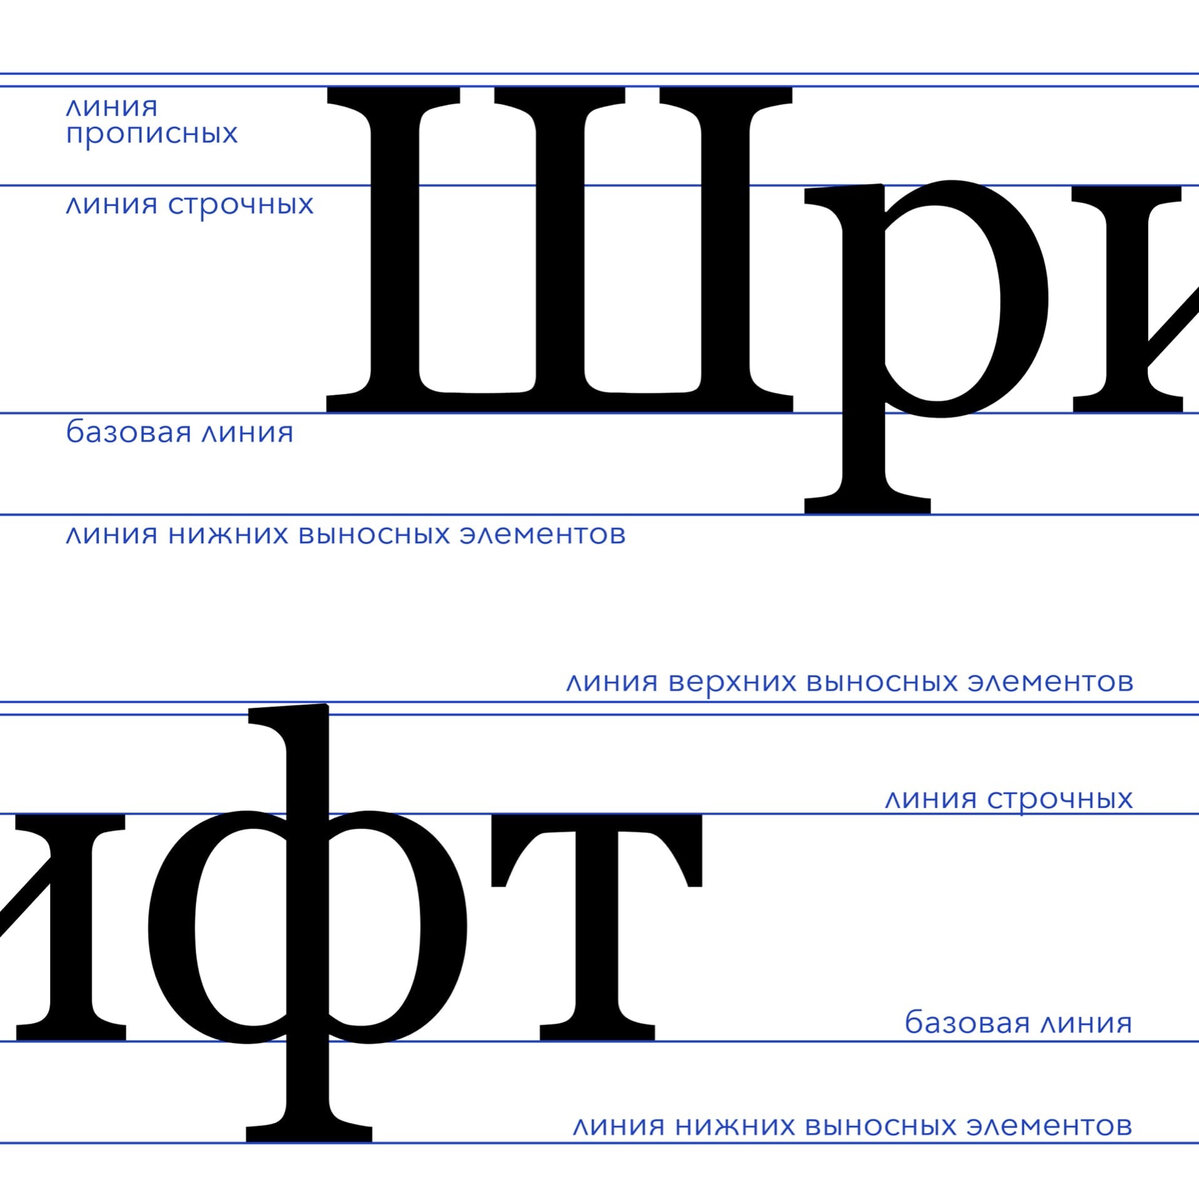 📝Шрифт является одним из главных инструментов графического дизайна, поэтому так важно знать строение букв и типографическую терминологию.-2